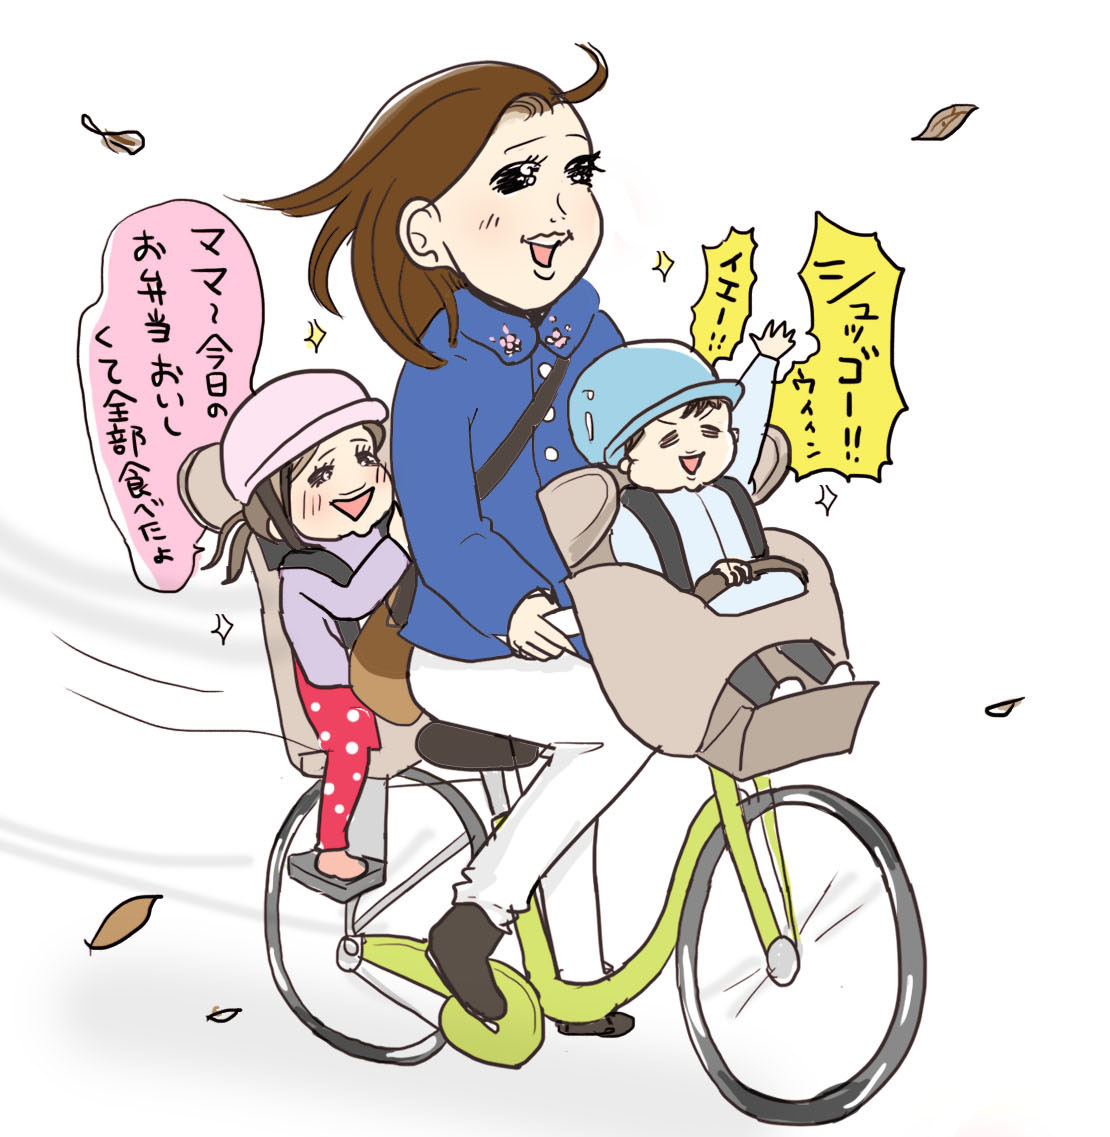 【ママたちの育児現場-No.35】
保育園のお迎え
自転車に子供たち乗せてる時間ってすごく穏やかで幸せで……でもこれやられると辛い😂

※寄せられたエピソードを漫画にしました
#過去絵 #育児漫画 #コミックエッセイ 